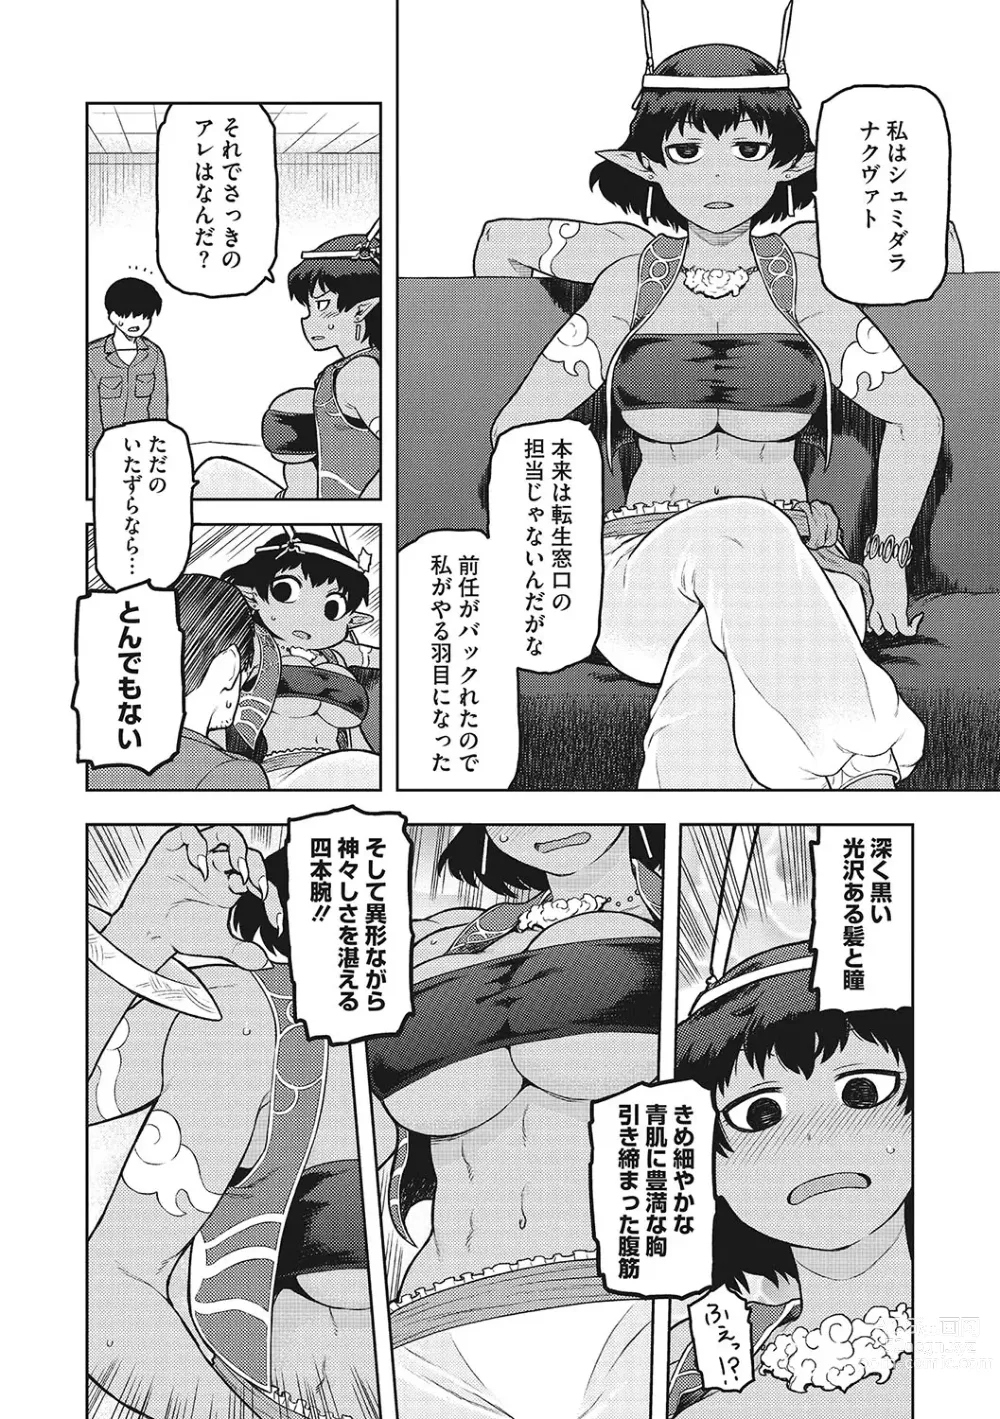 Page 7 of manga I.SyuWa.Karn Alph Lyla